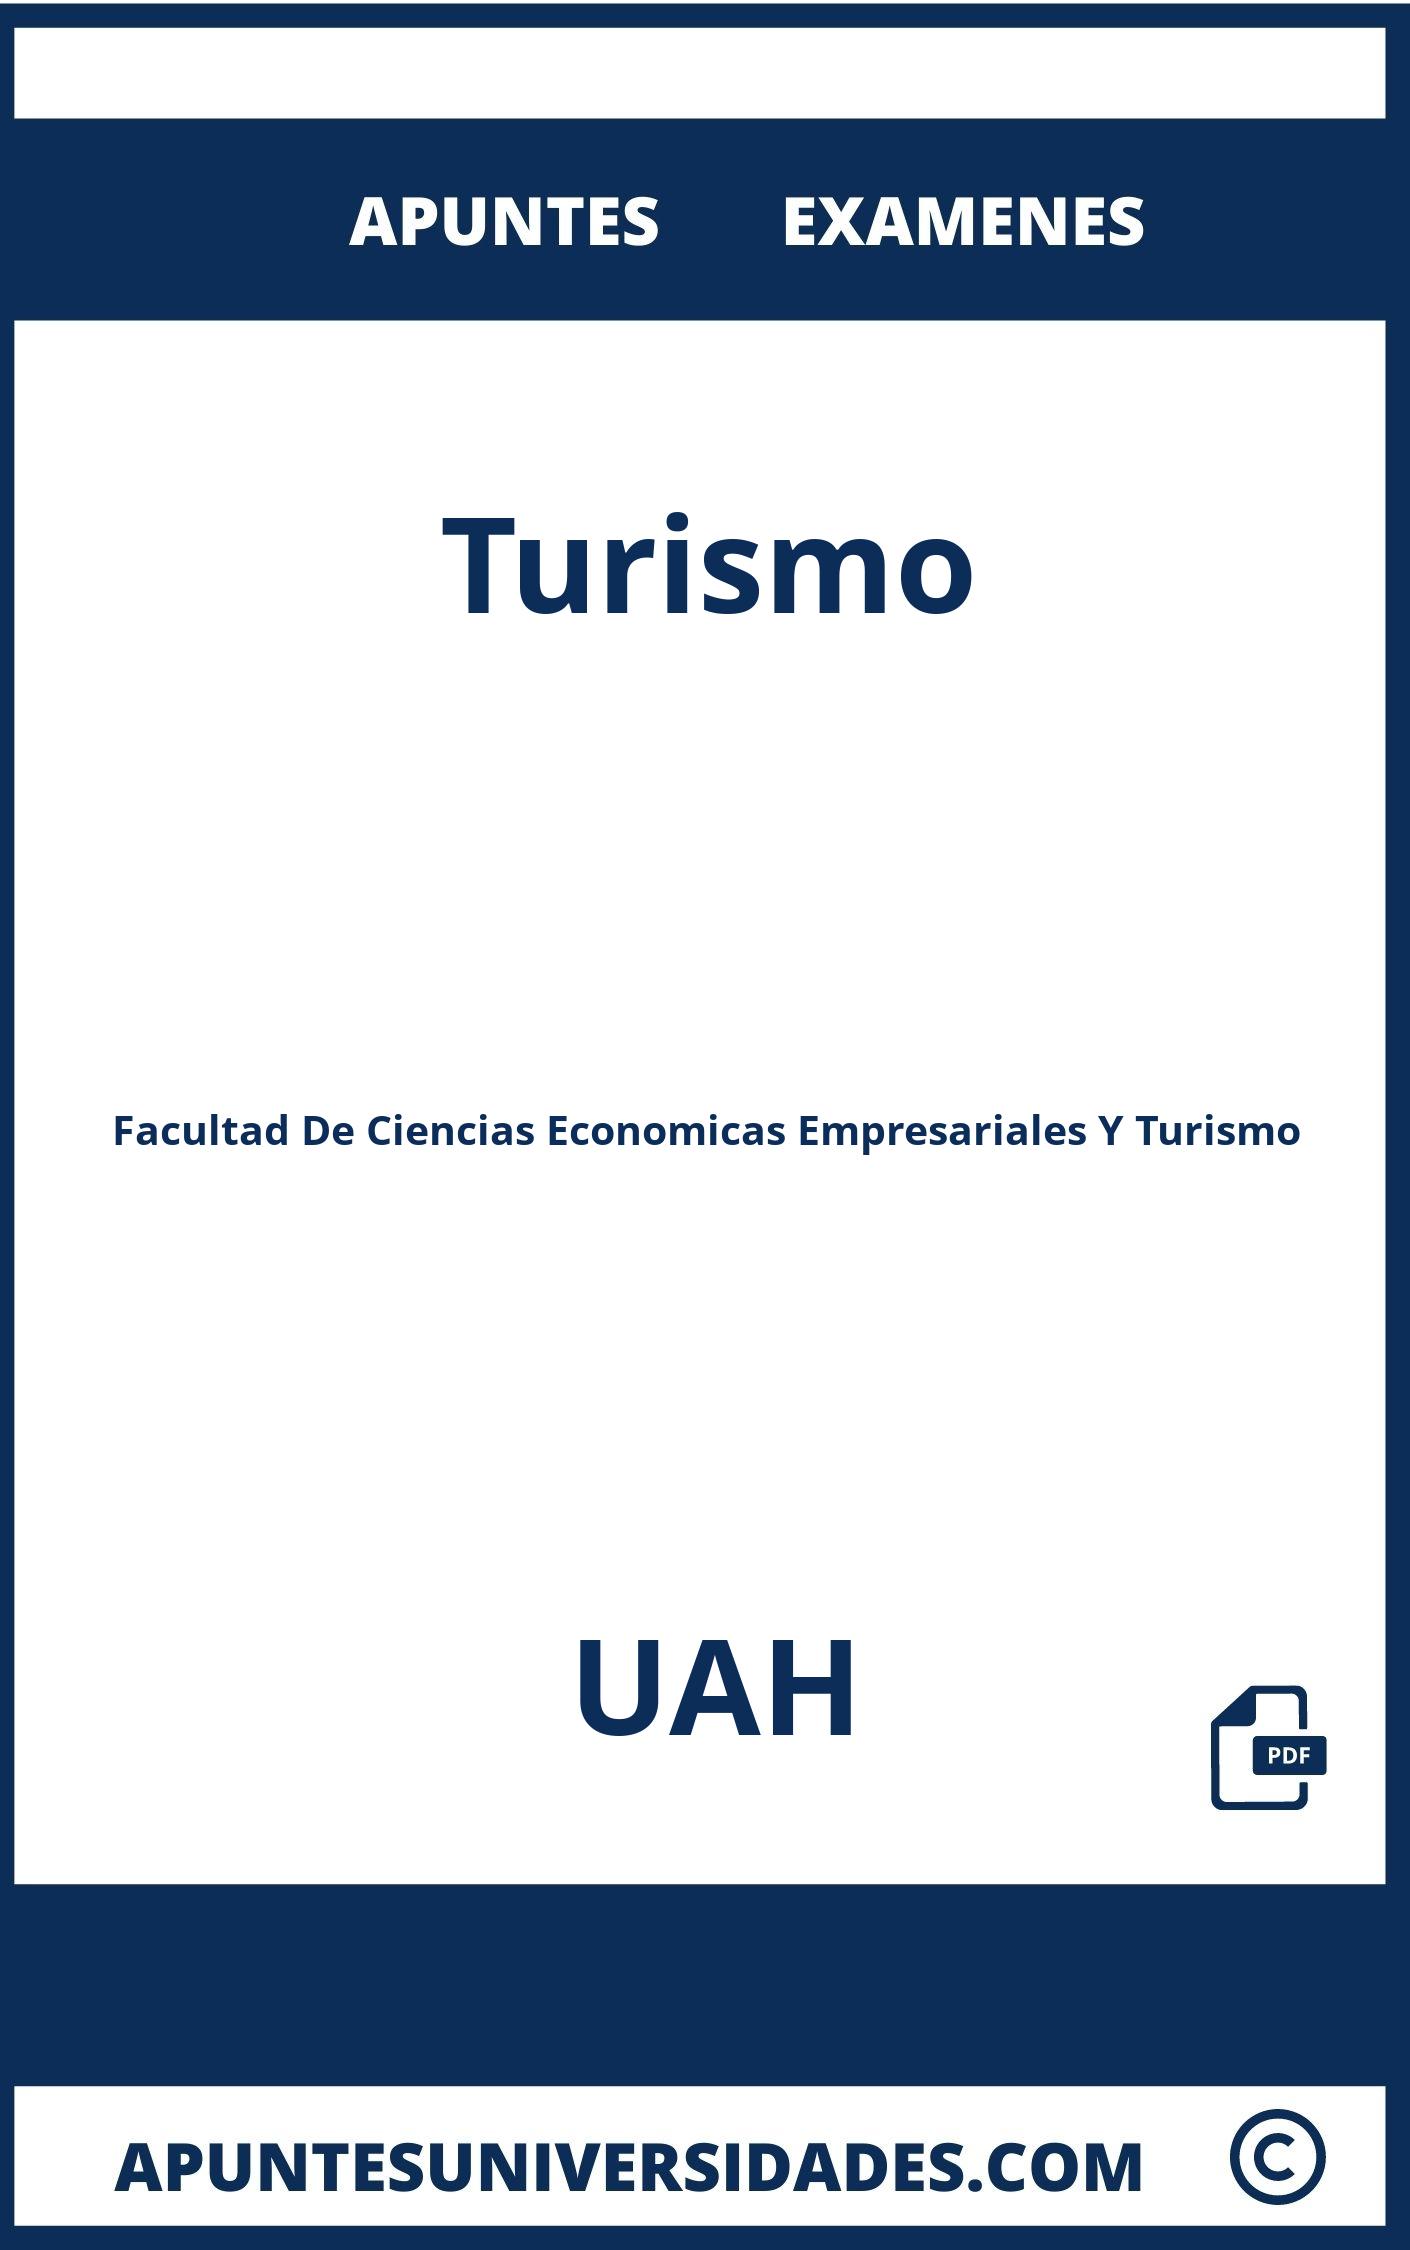 Apuntes y Examenes de Turismo UAH